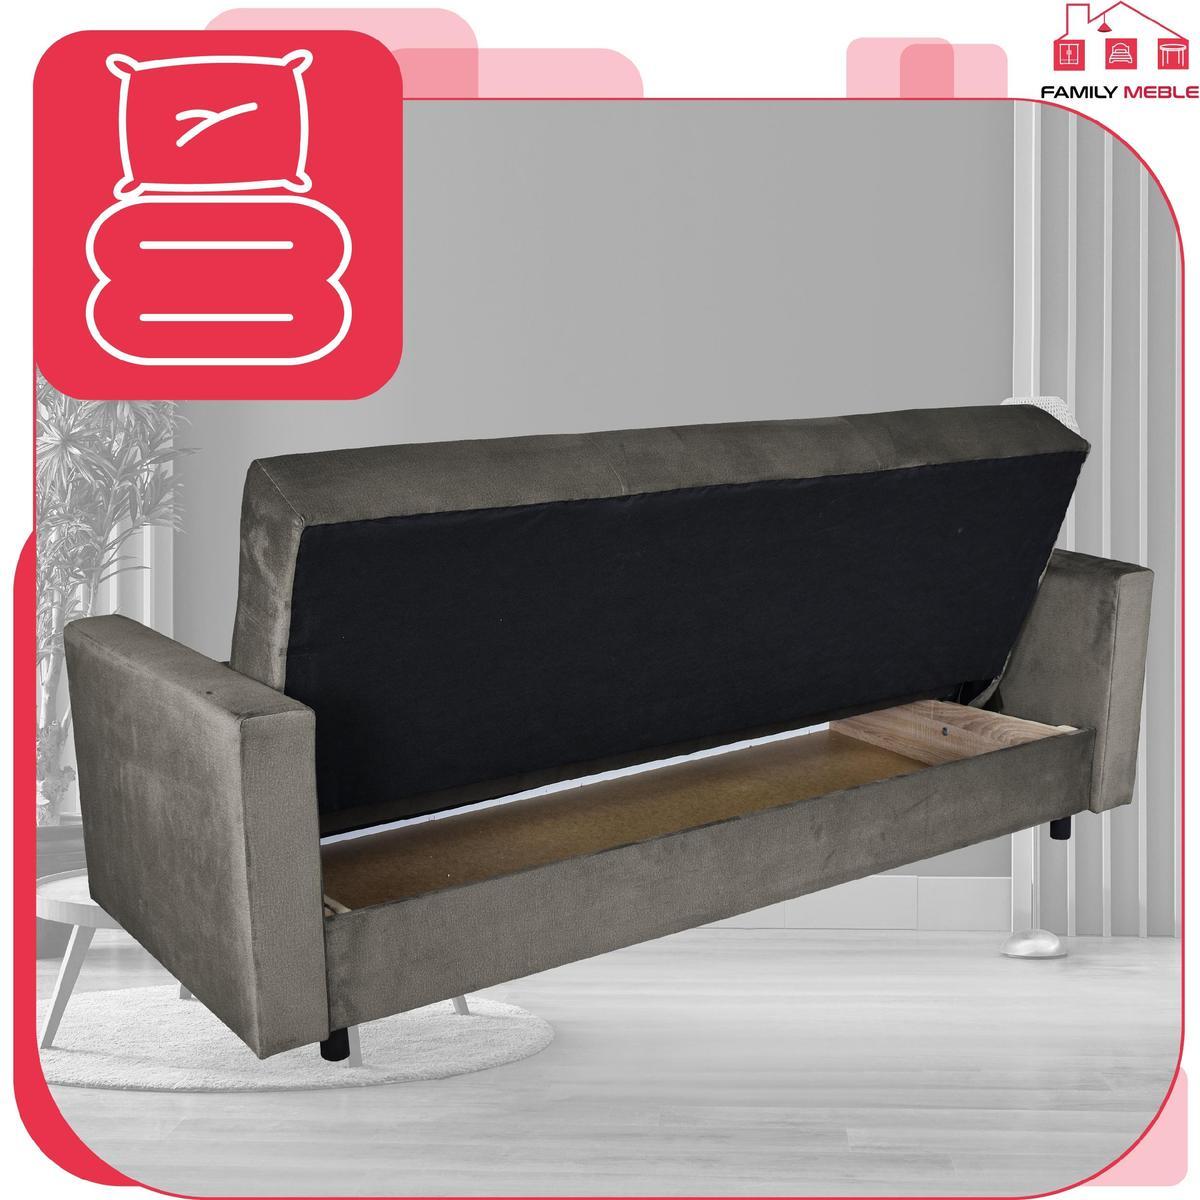 Wersalka sofa kanapa rozkładana Alicja FamilyMeble 5 Full Screen